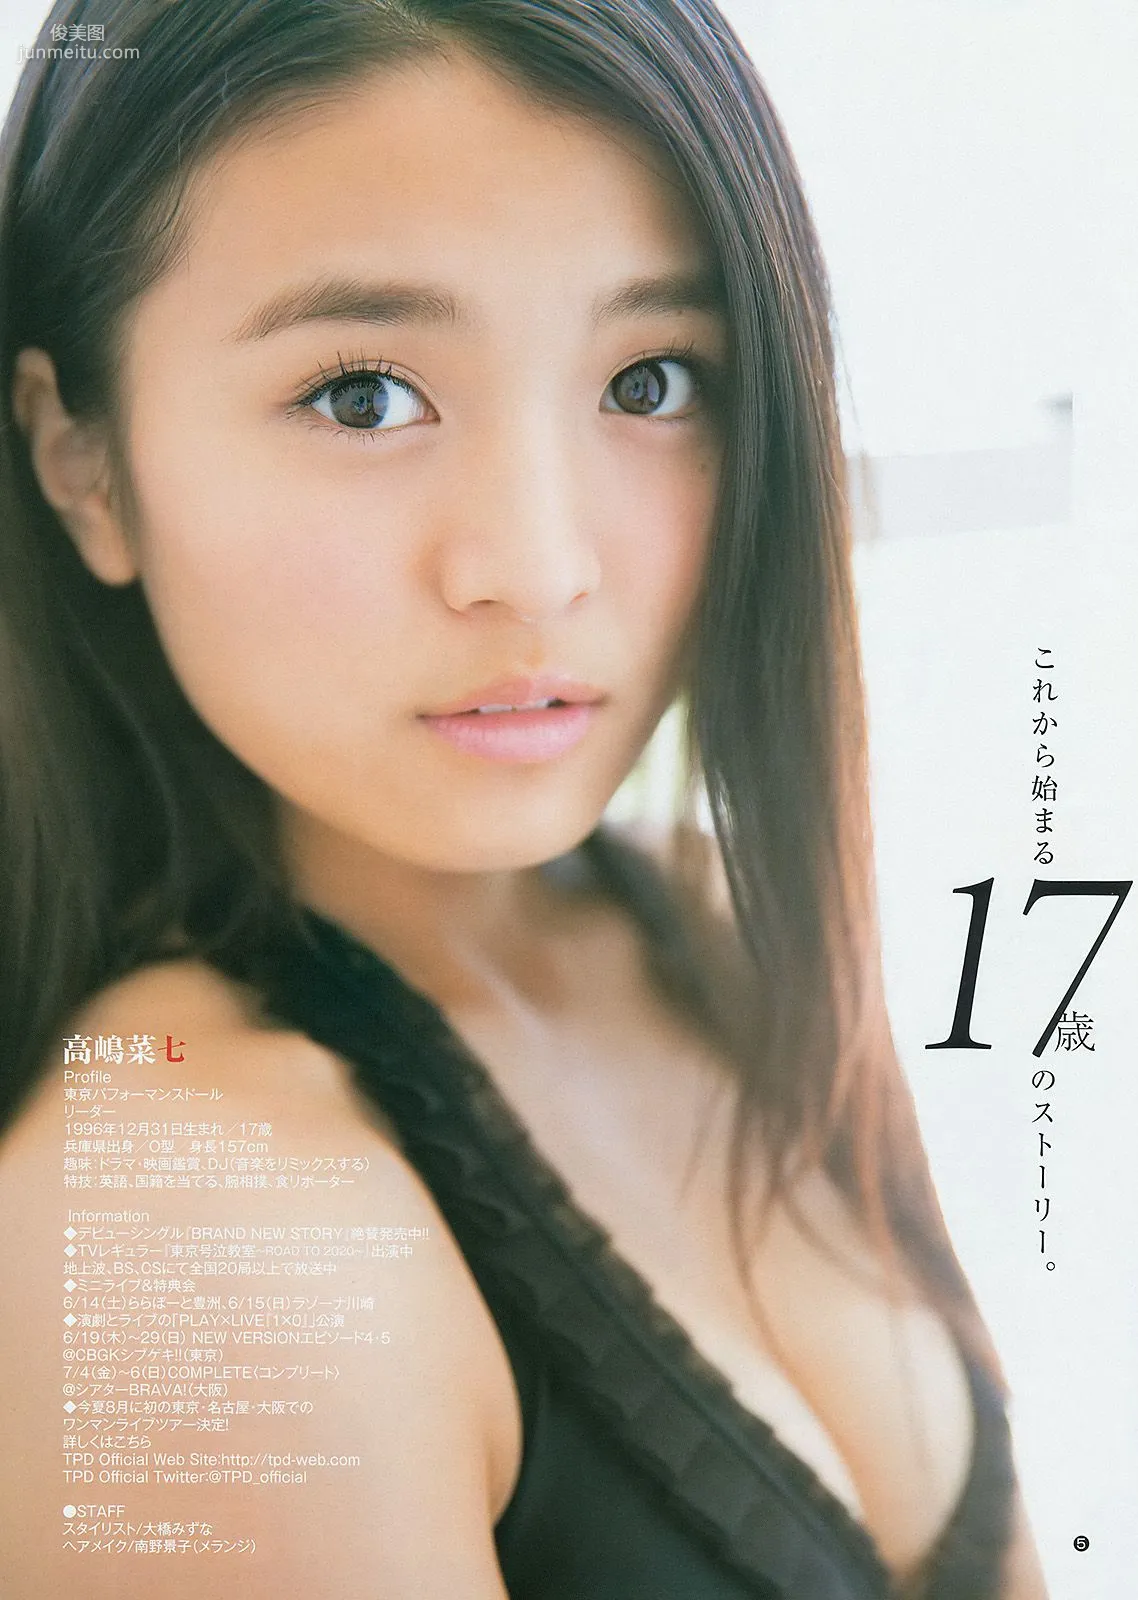 川栄李奈 橋本真帆 高嶋菜七 [Weekly Young Jump] 2014年No.28 写真杂志17